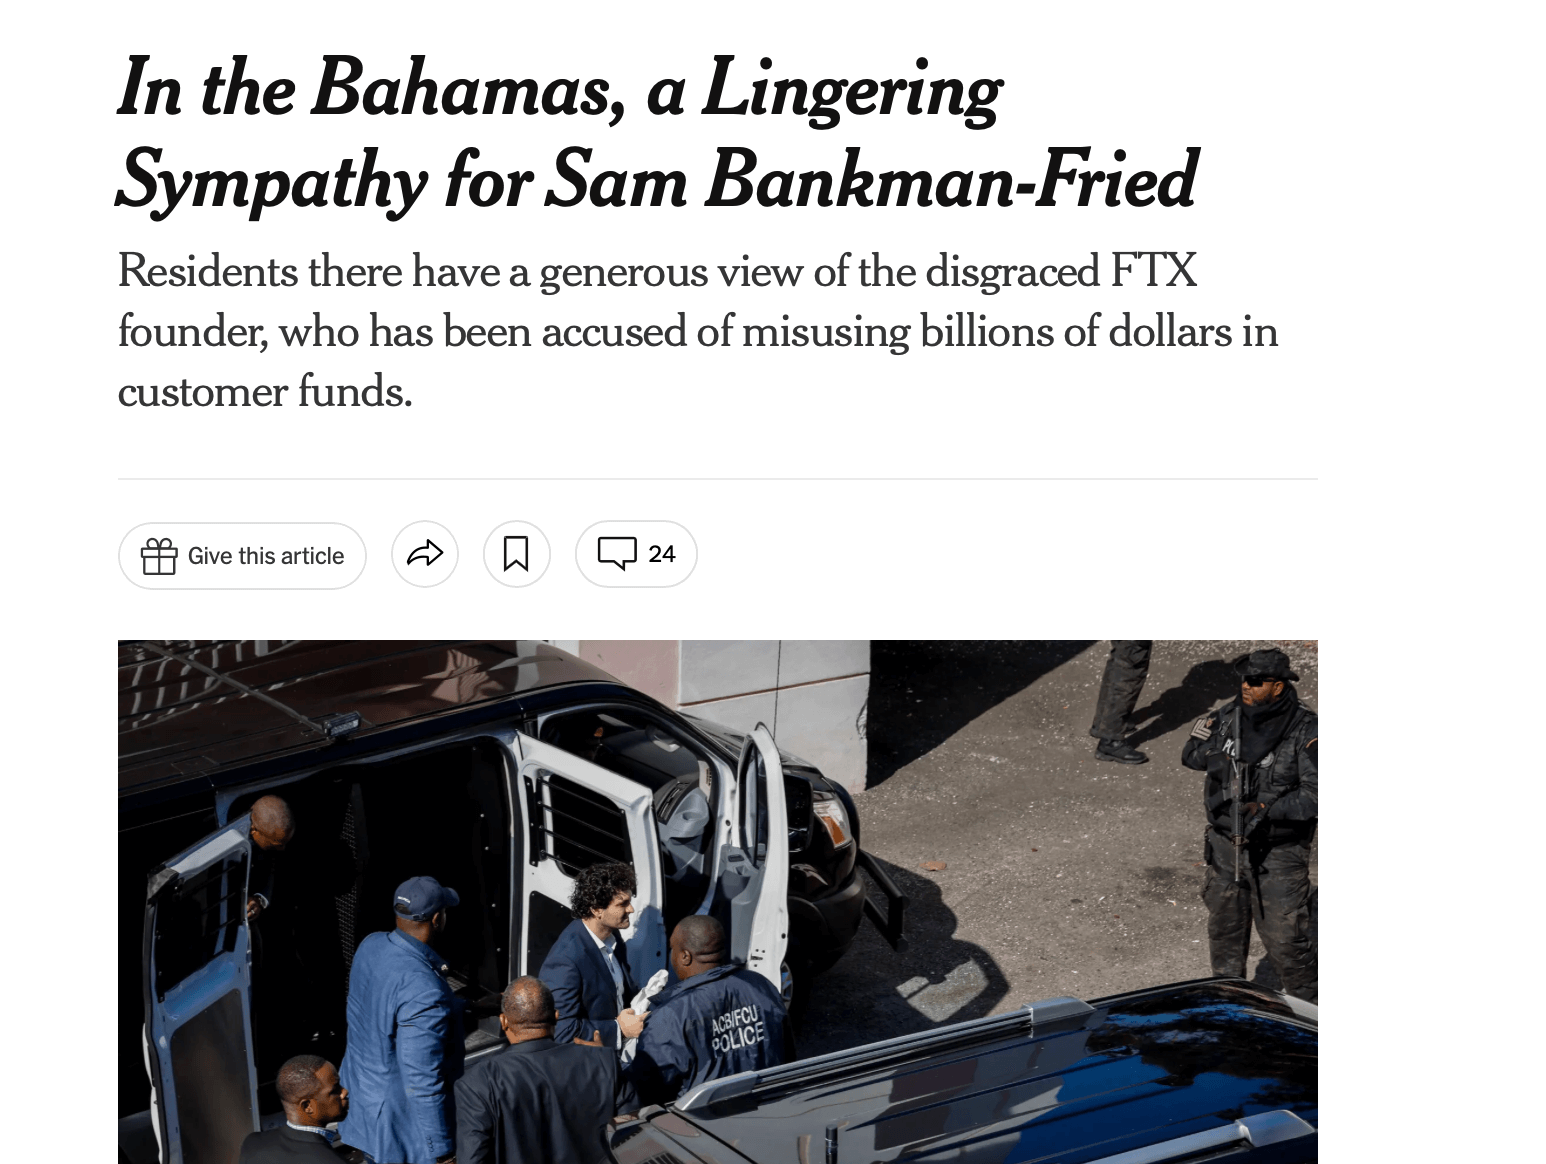 Кто такой Сэм Банкман-Фрид на самом деле? Статья NYT о симпатии в адрес Сэма Банкмана-Фрида на Багамских островах. Фото.